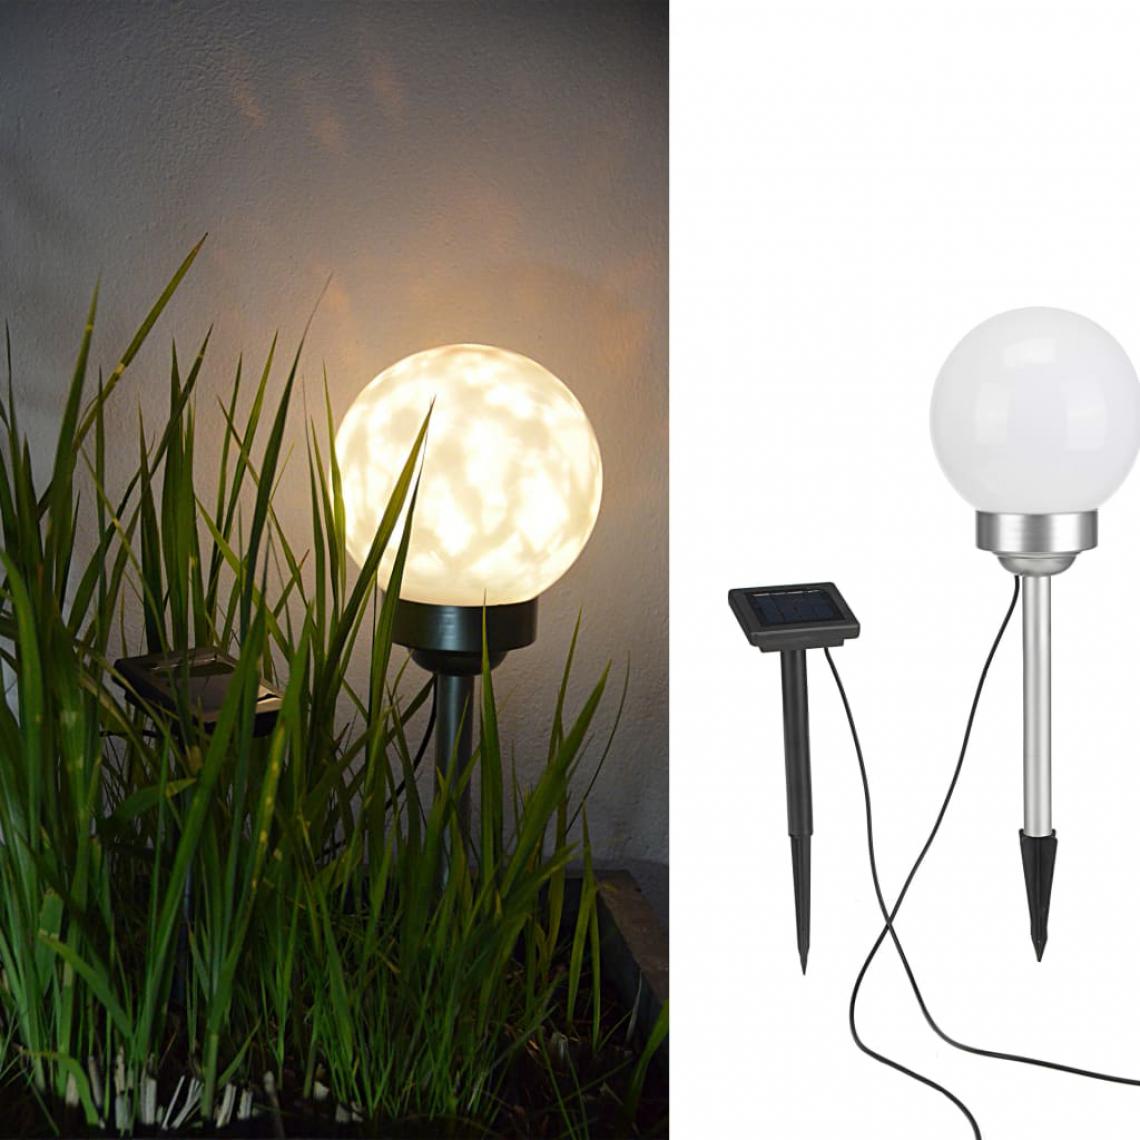 Icaverne - Magnifique Luminaires famille Dodoma HI Lampe boule solaire rotative à LED de jardin 15 cm - Lampadaire